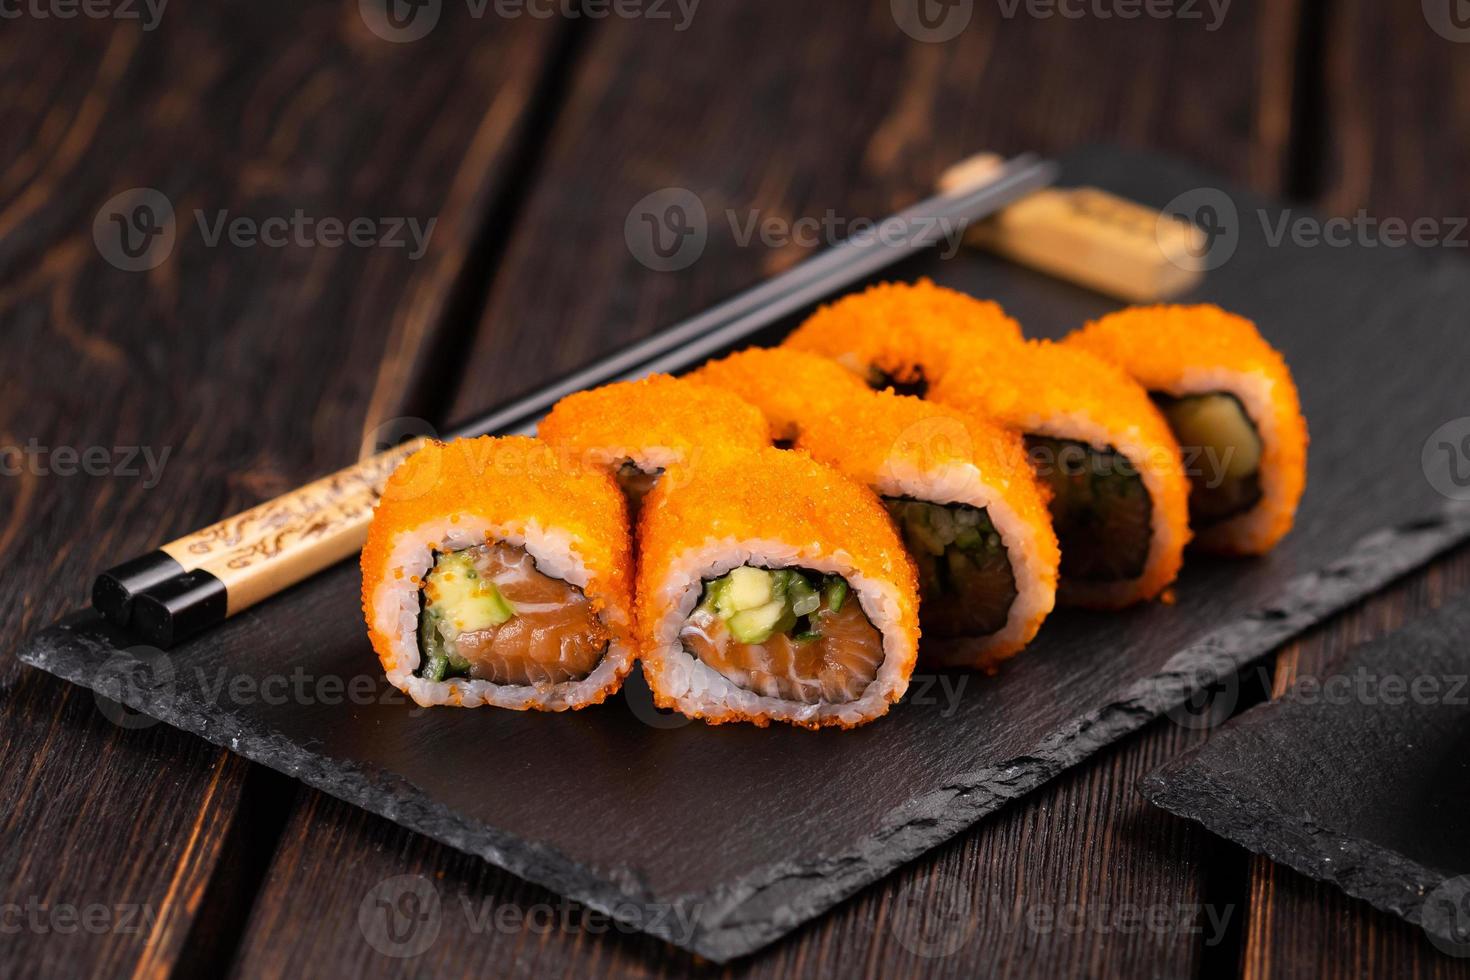 kalifornische sushi-rolle mit lachs, avocado, gurke und tobiko-kaviar, serviert auf tafelnahaufnahme - japanisches essen foto